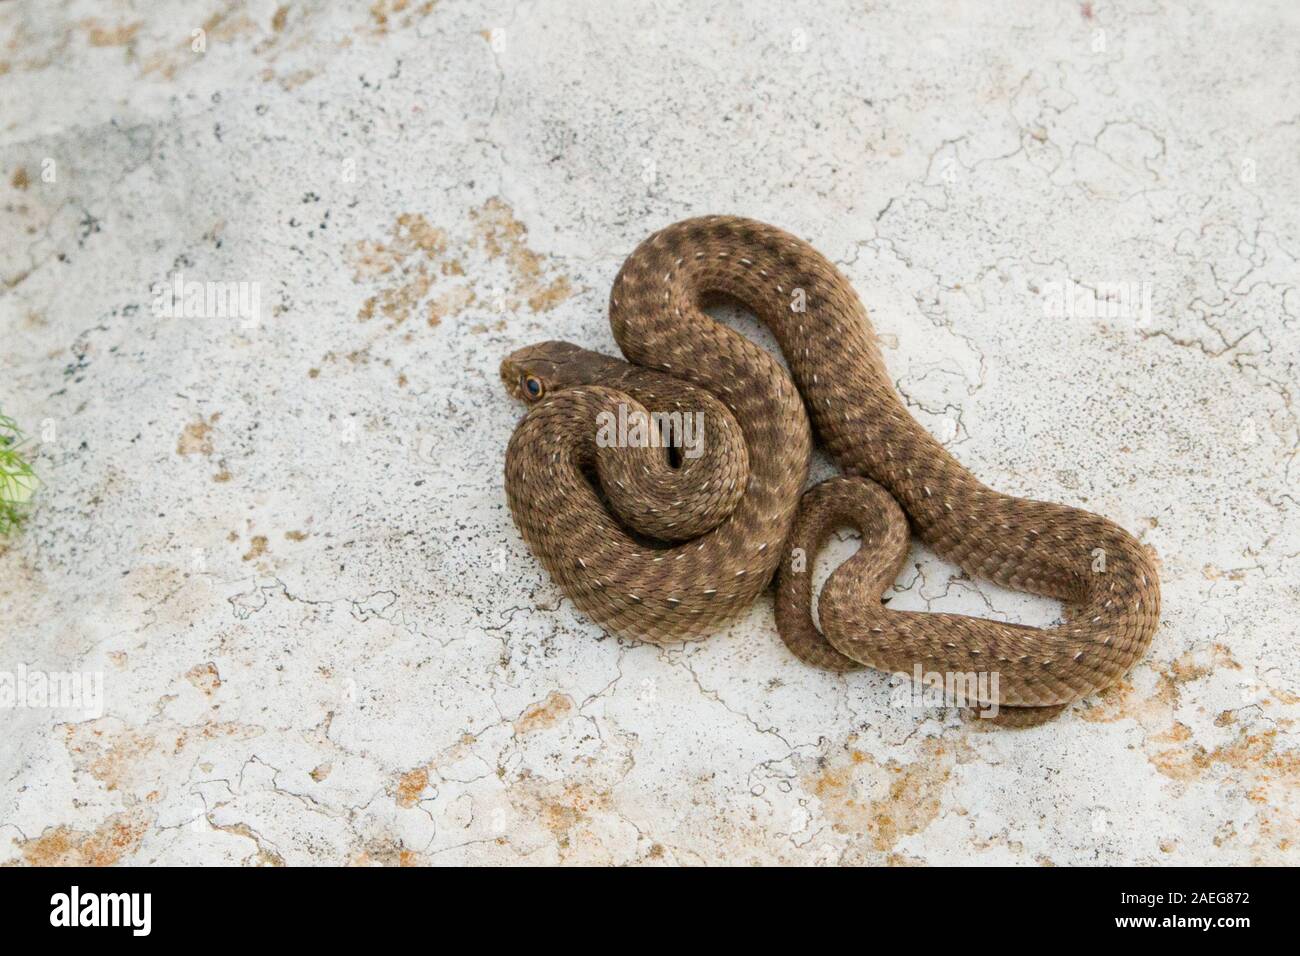 Malpolon monspessulanus, gemeinhin als Montpellier snake genannt, ist eine Pflanzenart aus der Gattung der Milde giftige hinten-fanged colubrids. Montpellier Schlange ist sehr kom Stockfoto